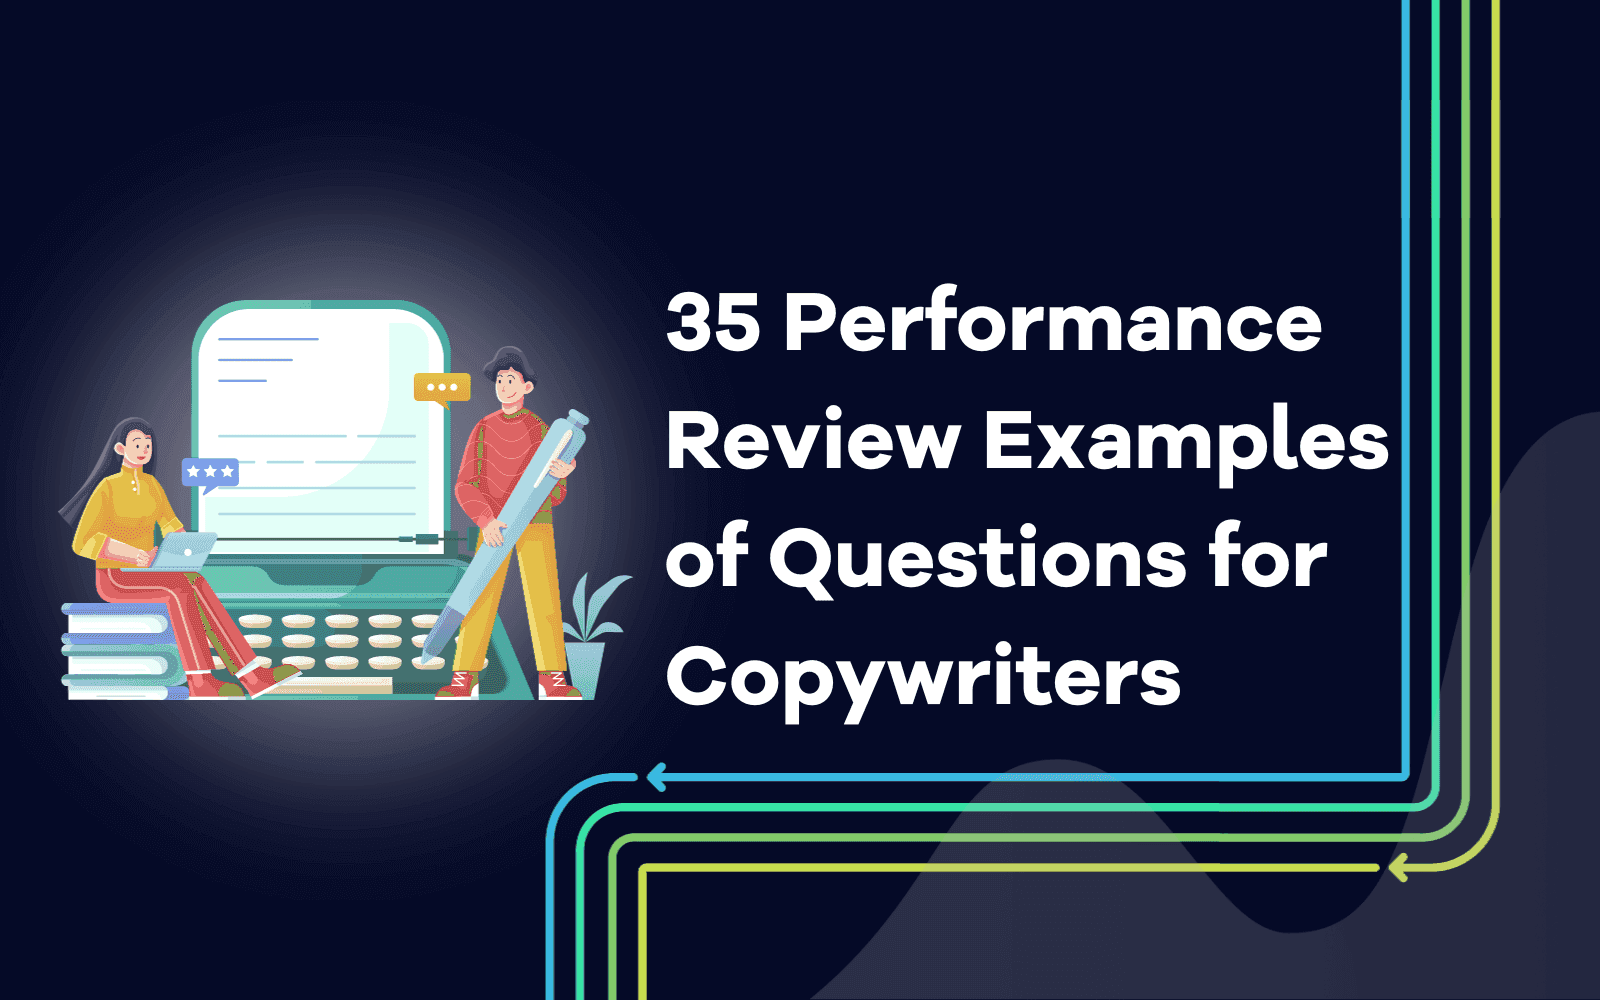 35 Exempel på frågor till copywriters i samband med prestationsutvärdering